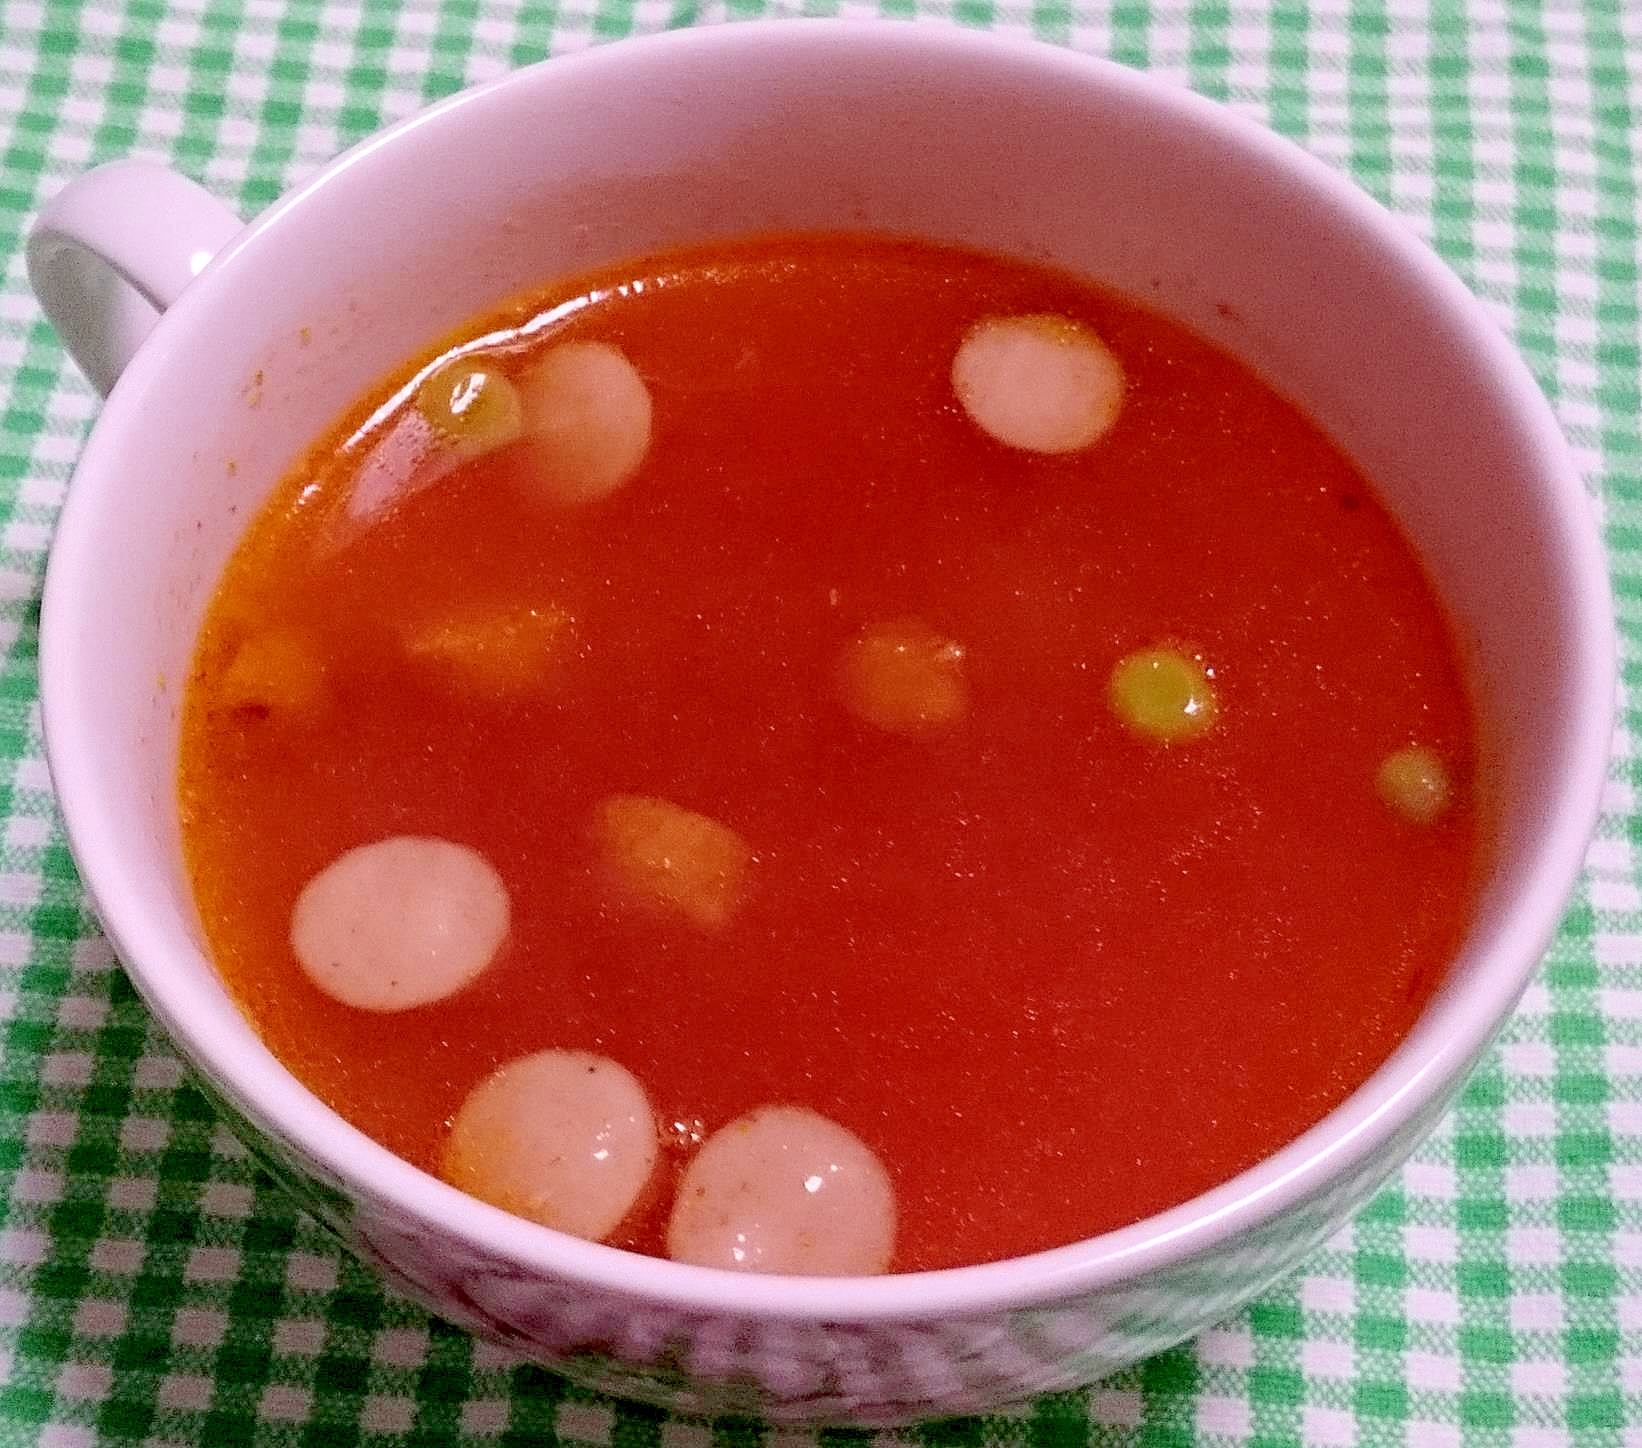 ミネストローネ風スープ